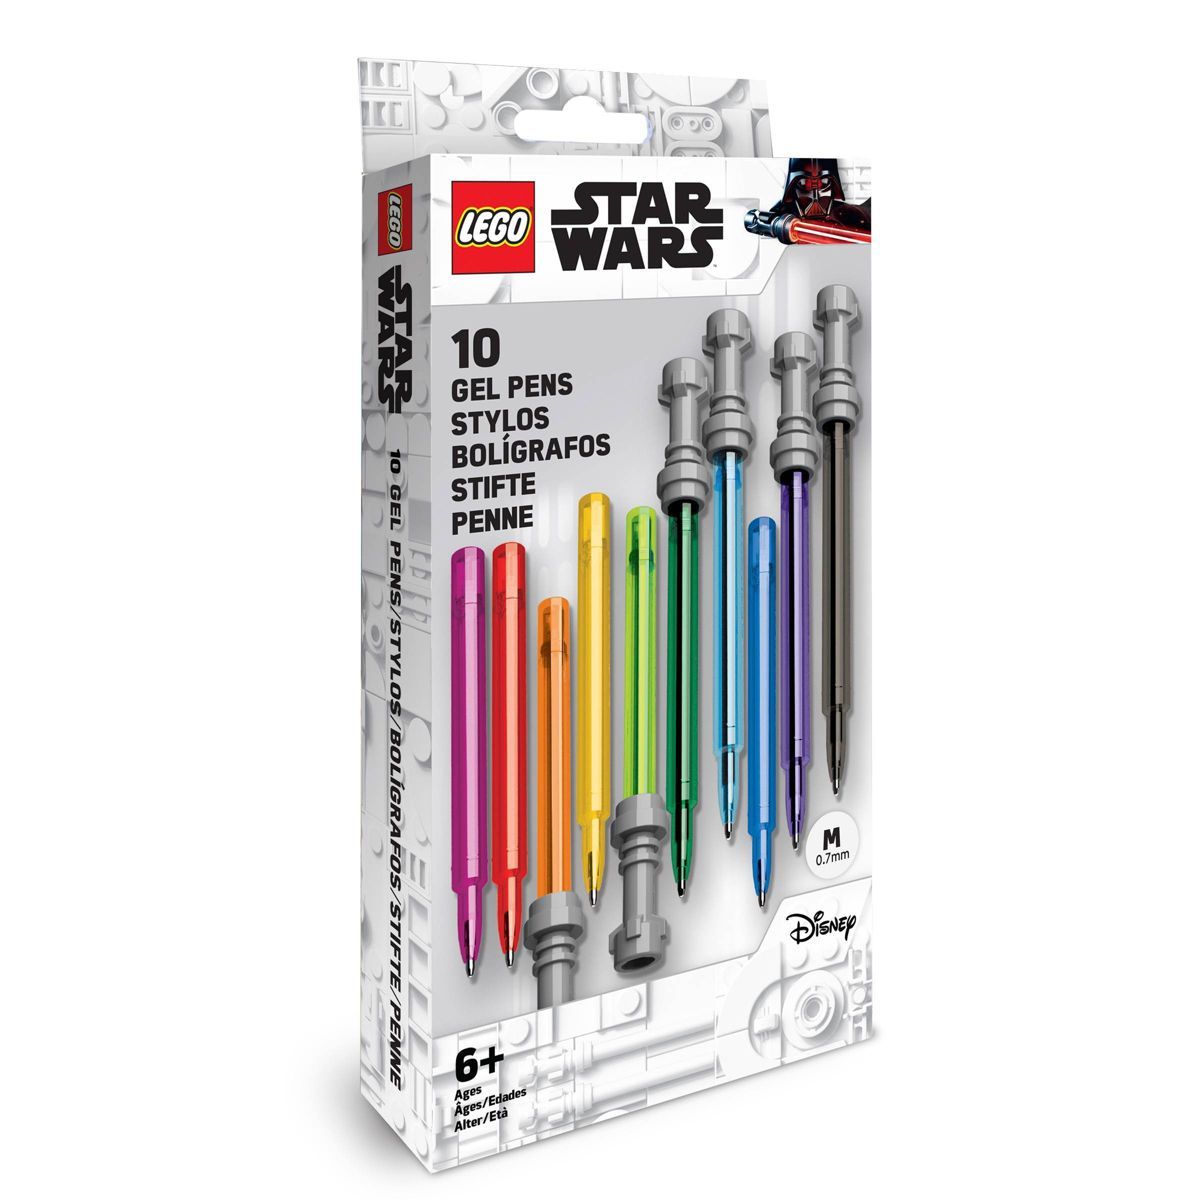 LEGO Star Wars 10pk Gel Pens Multicolored Lightsaber | Target